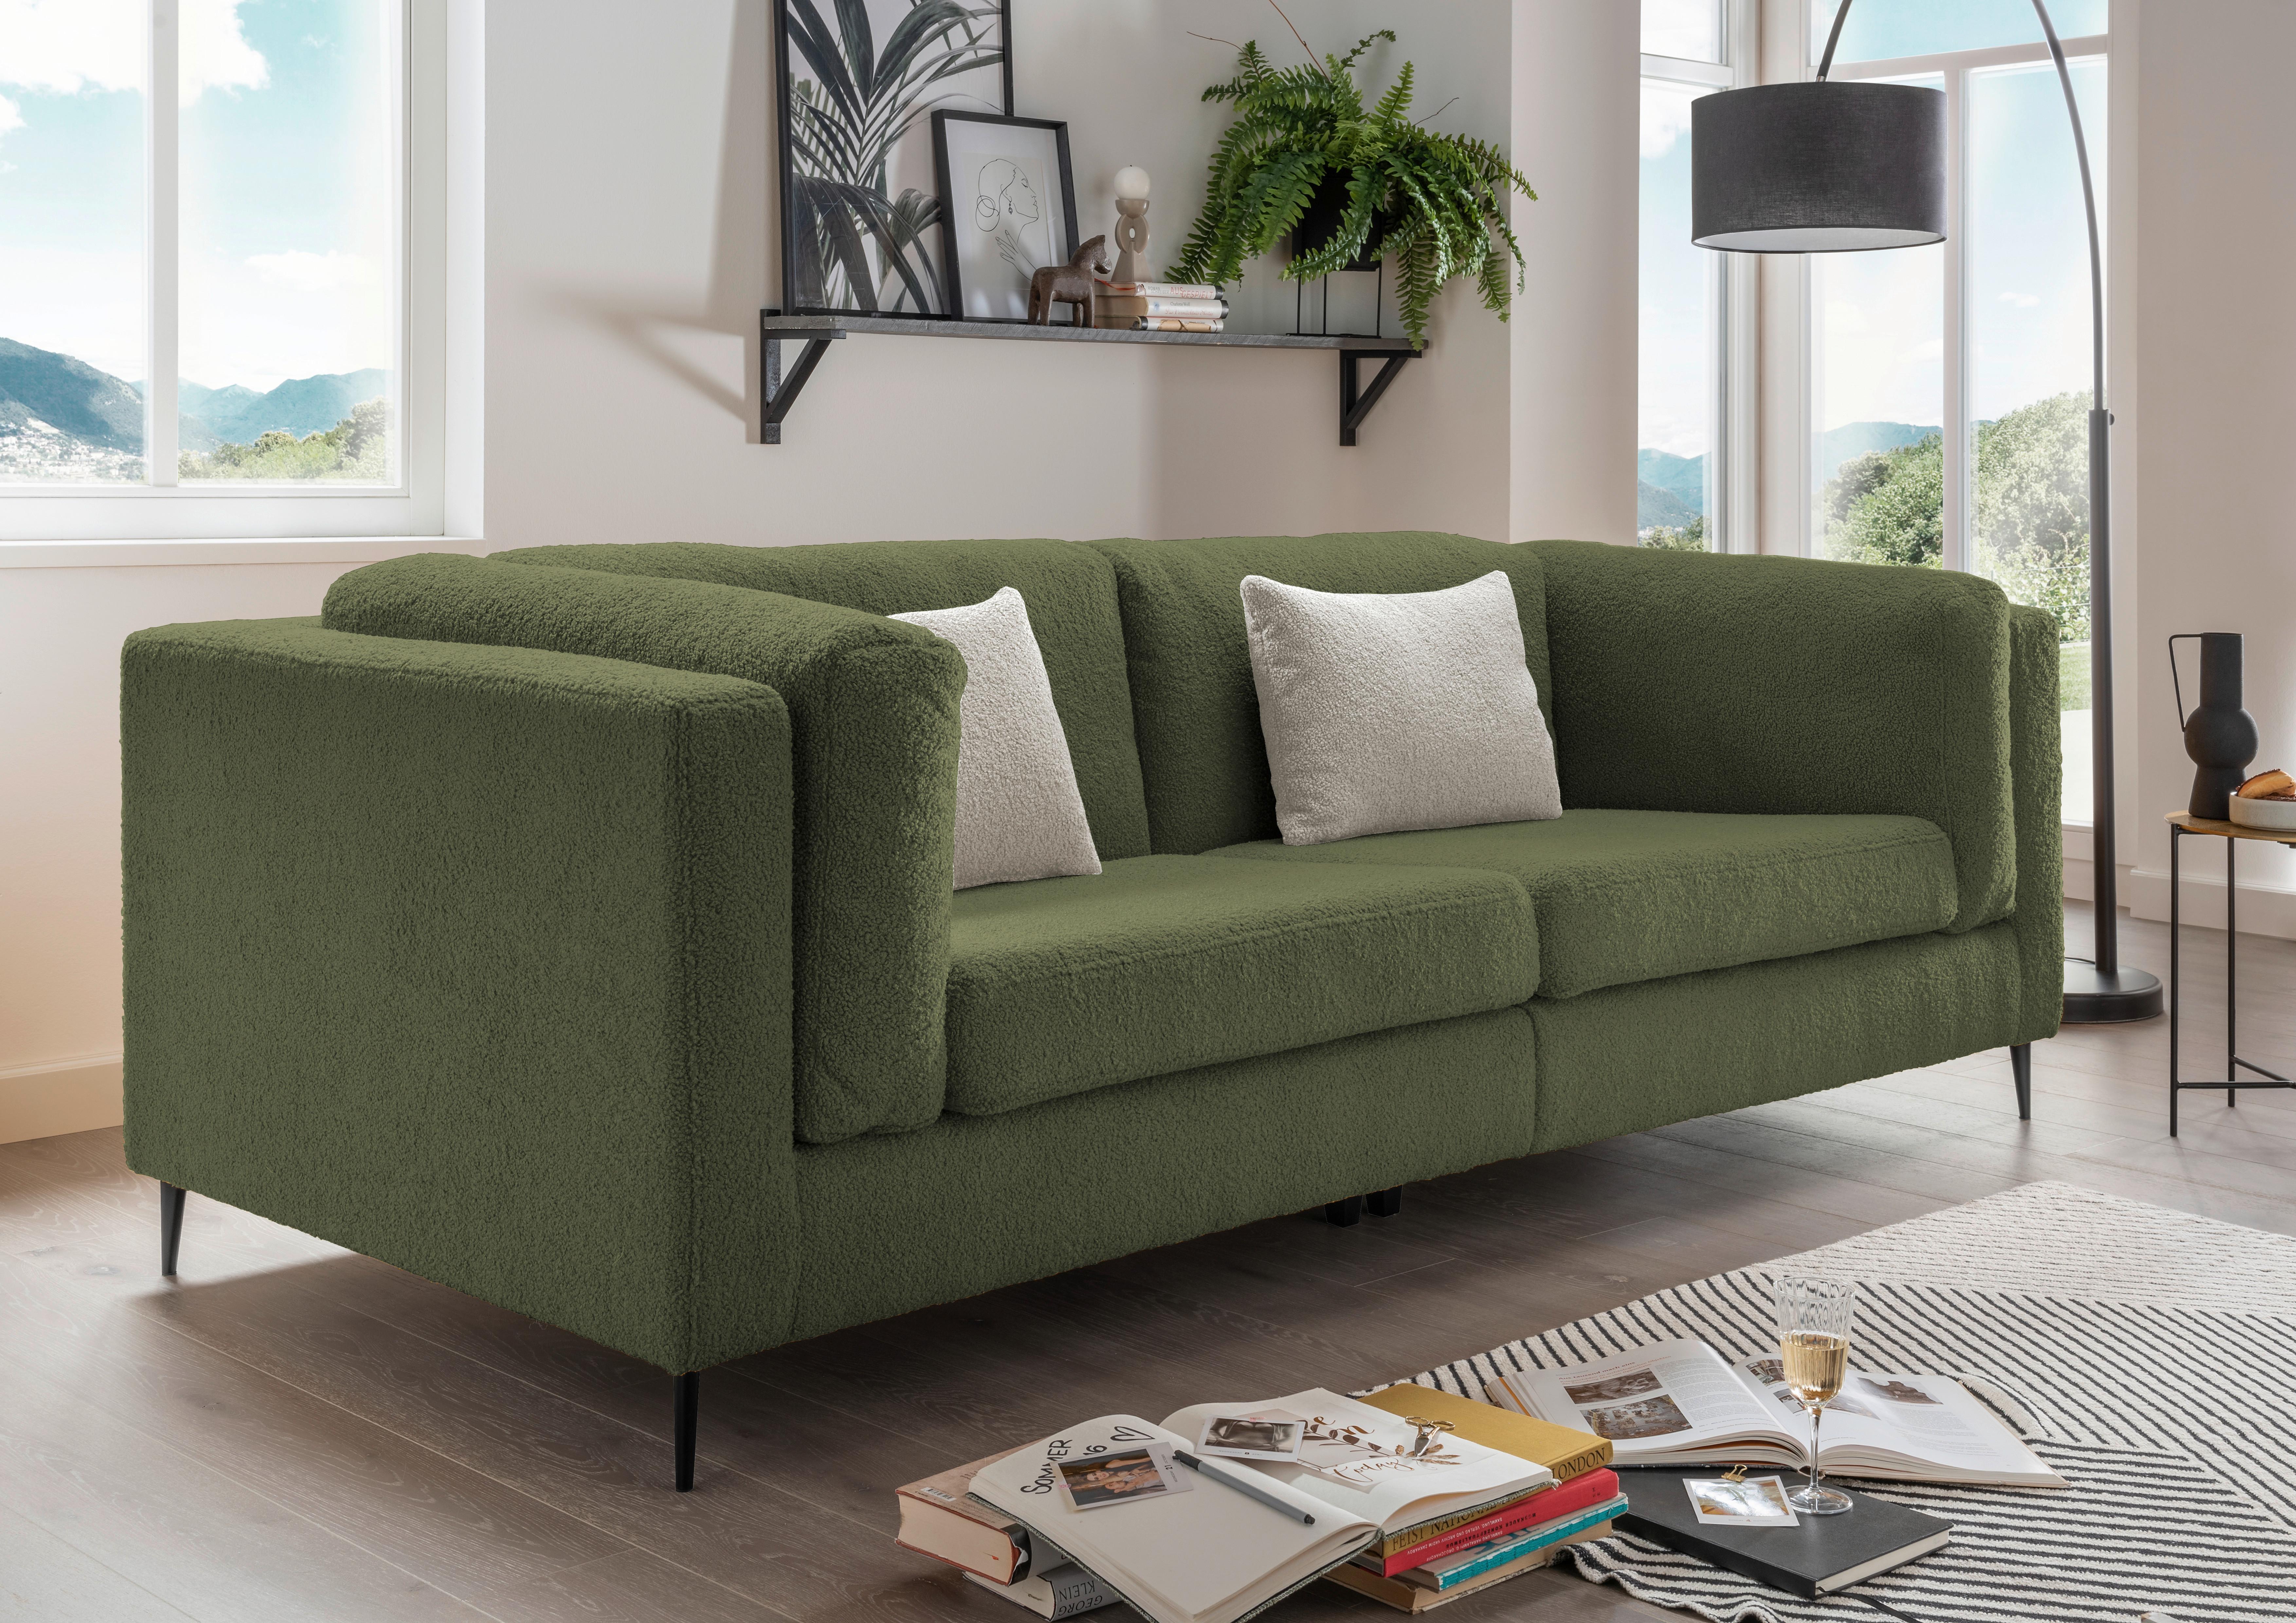 3-Sitzer-Sofa Roma Dunkelgrün Teddystoff - Dunkelgrün/Silberfarben, Design, Textil (250/82/112cm) - Livetastic